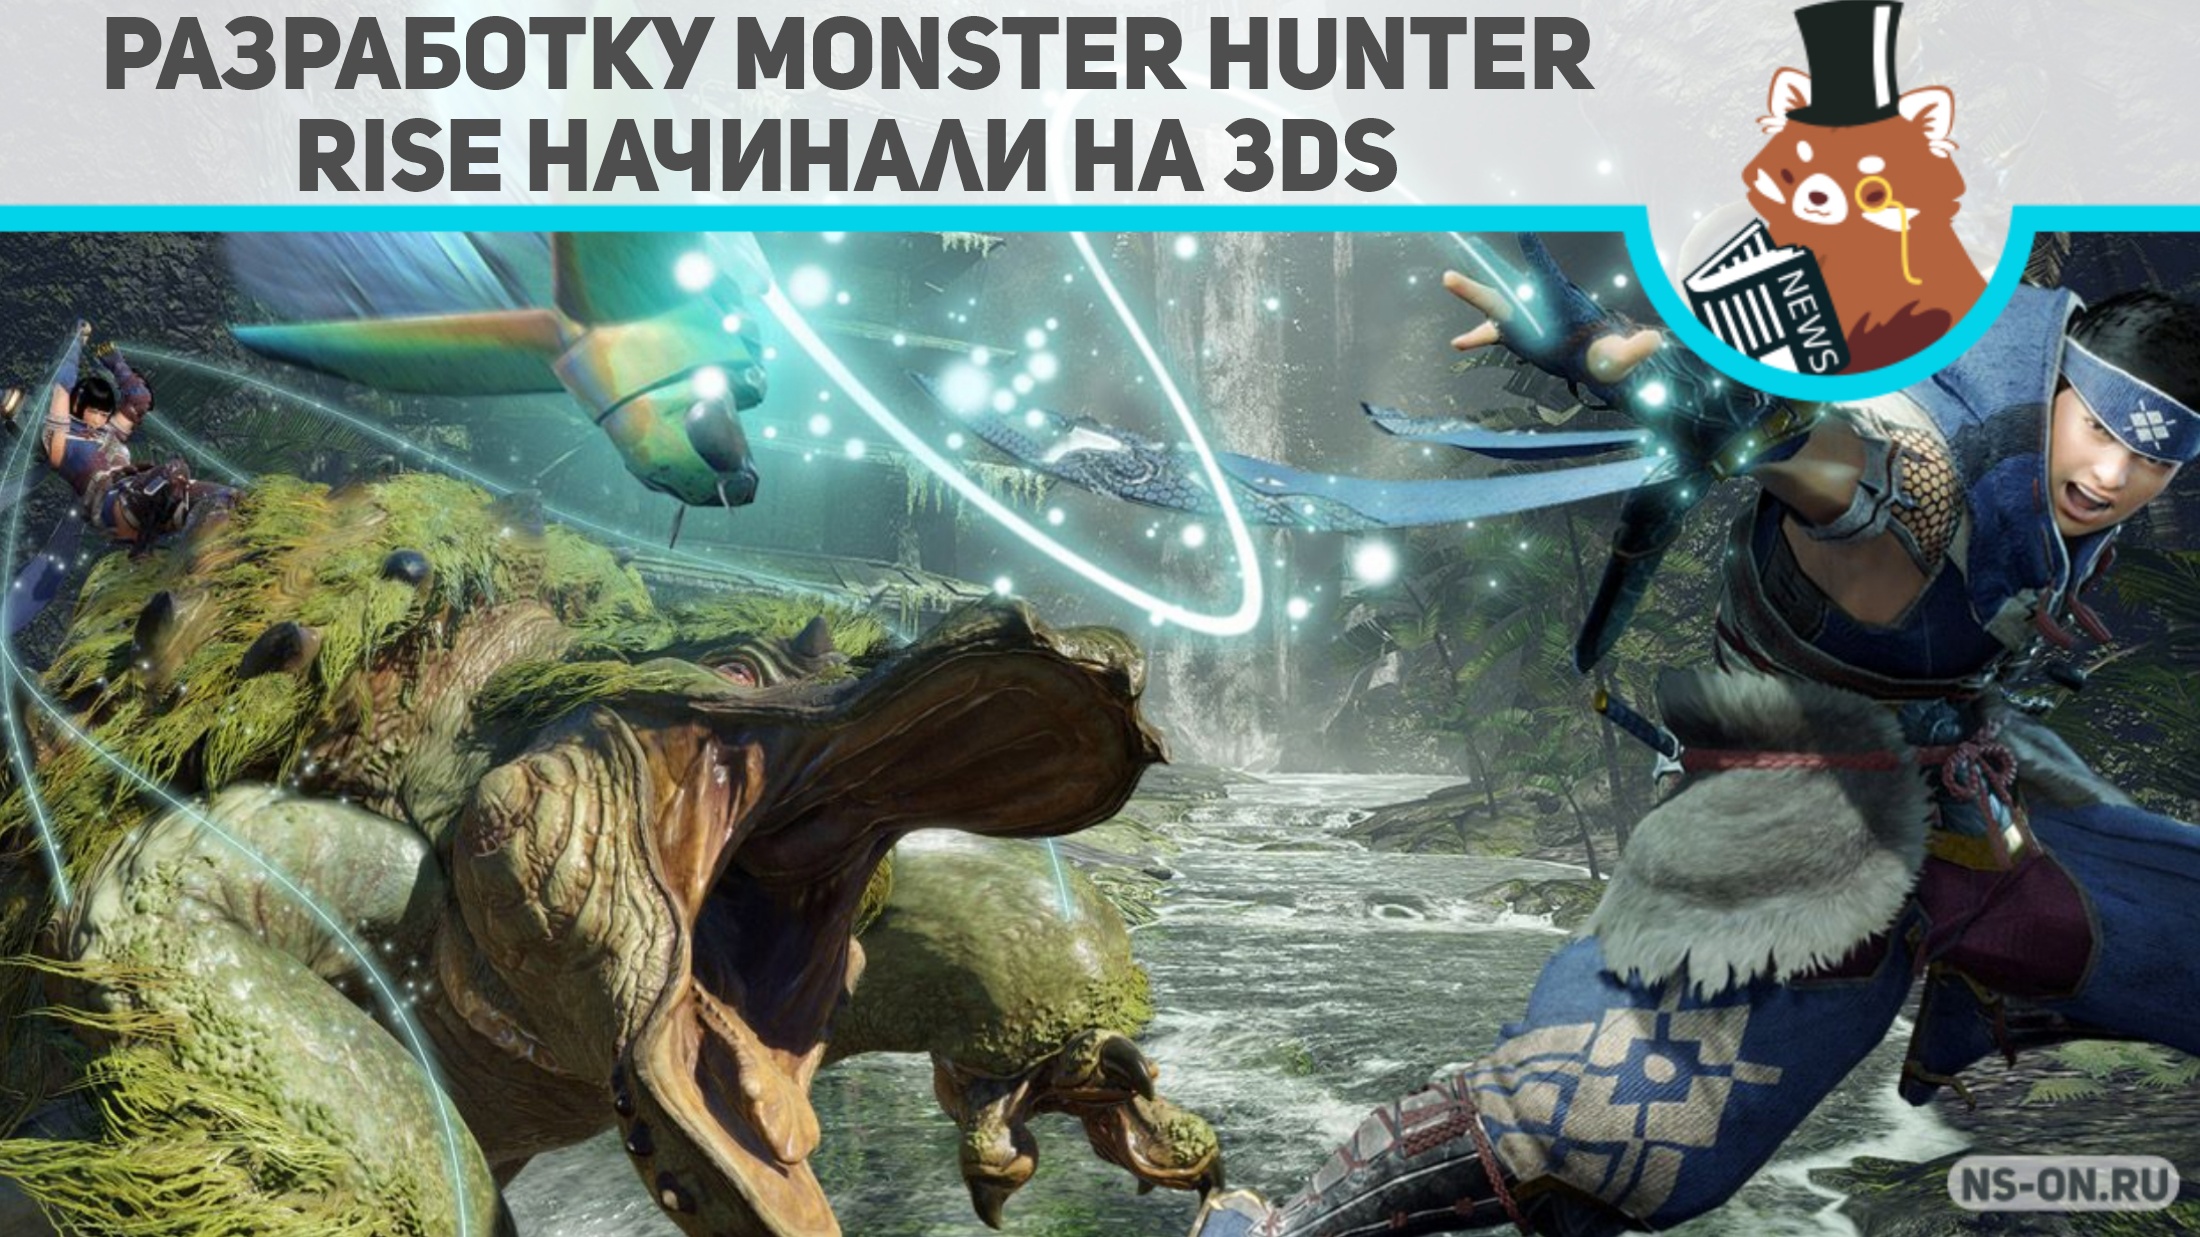 Вы сейчас просматриваете Разработку Monster Hunter Rise начинали на 3DS